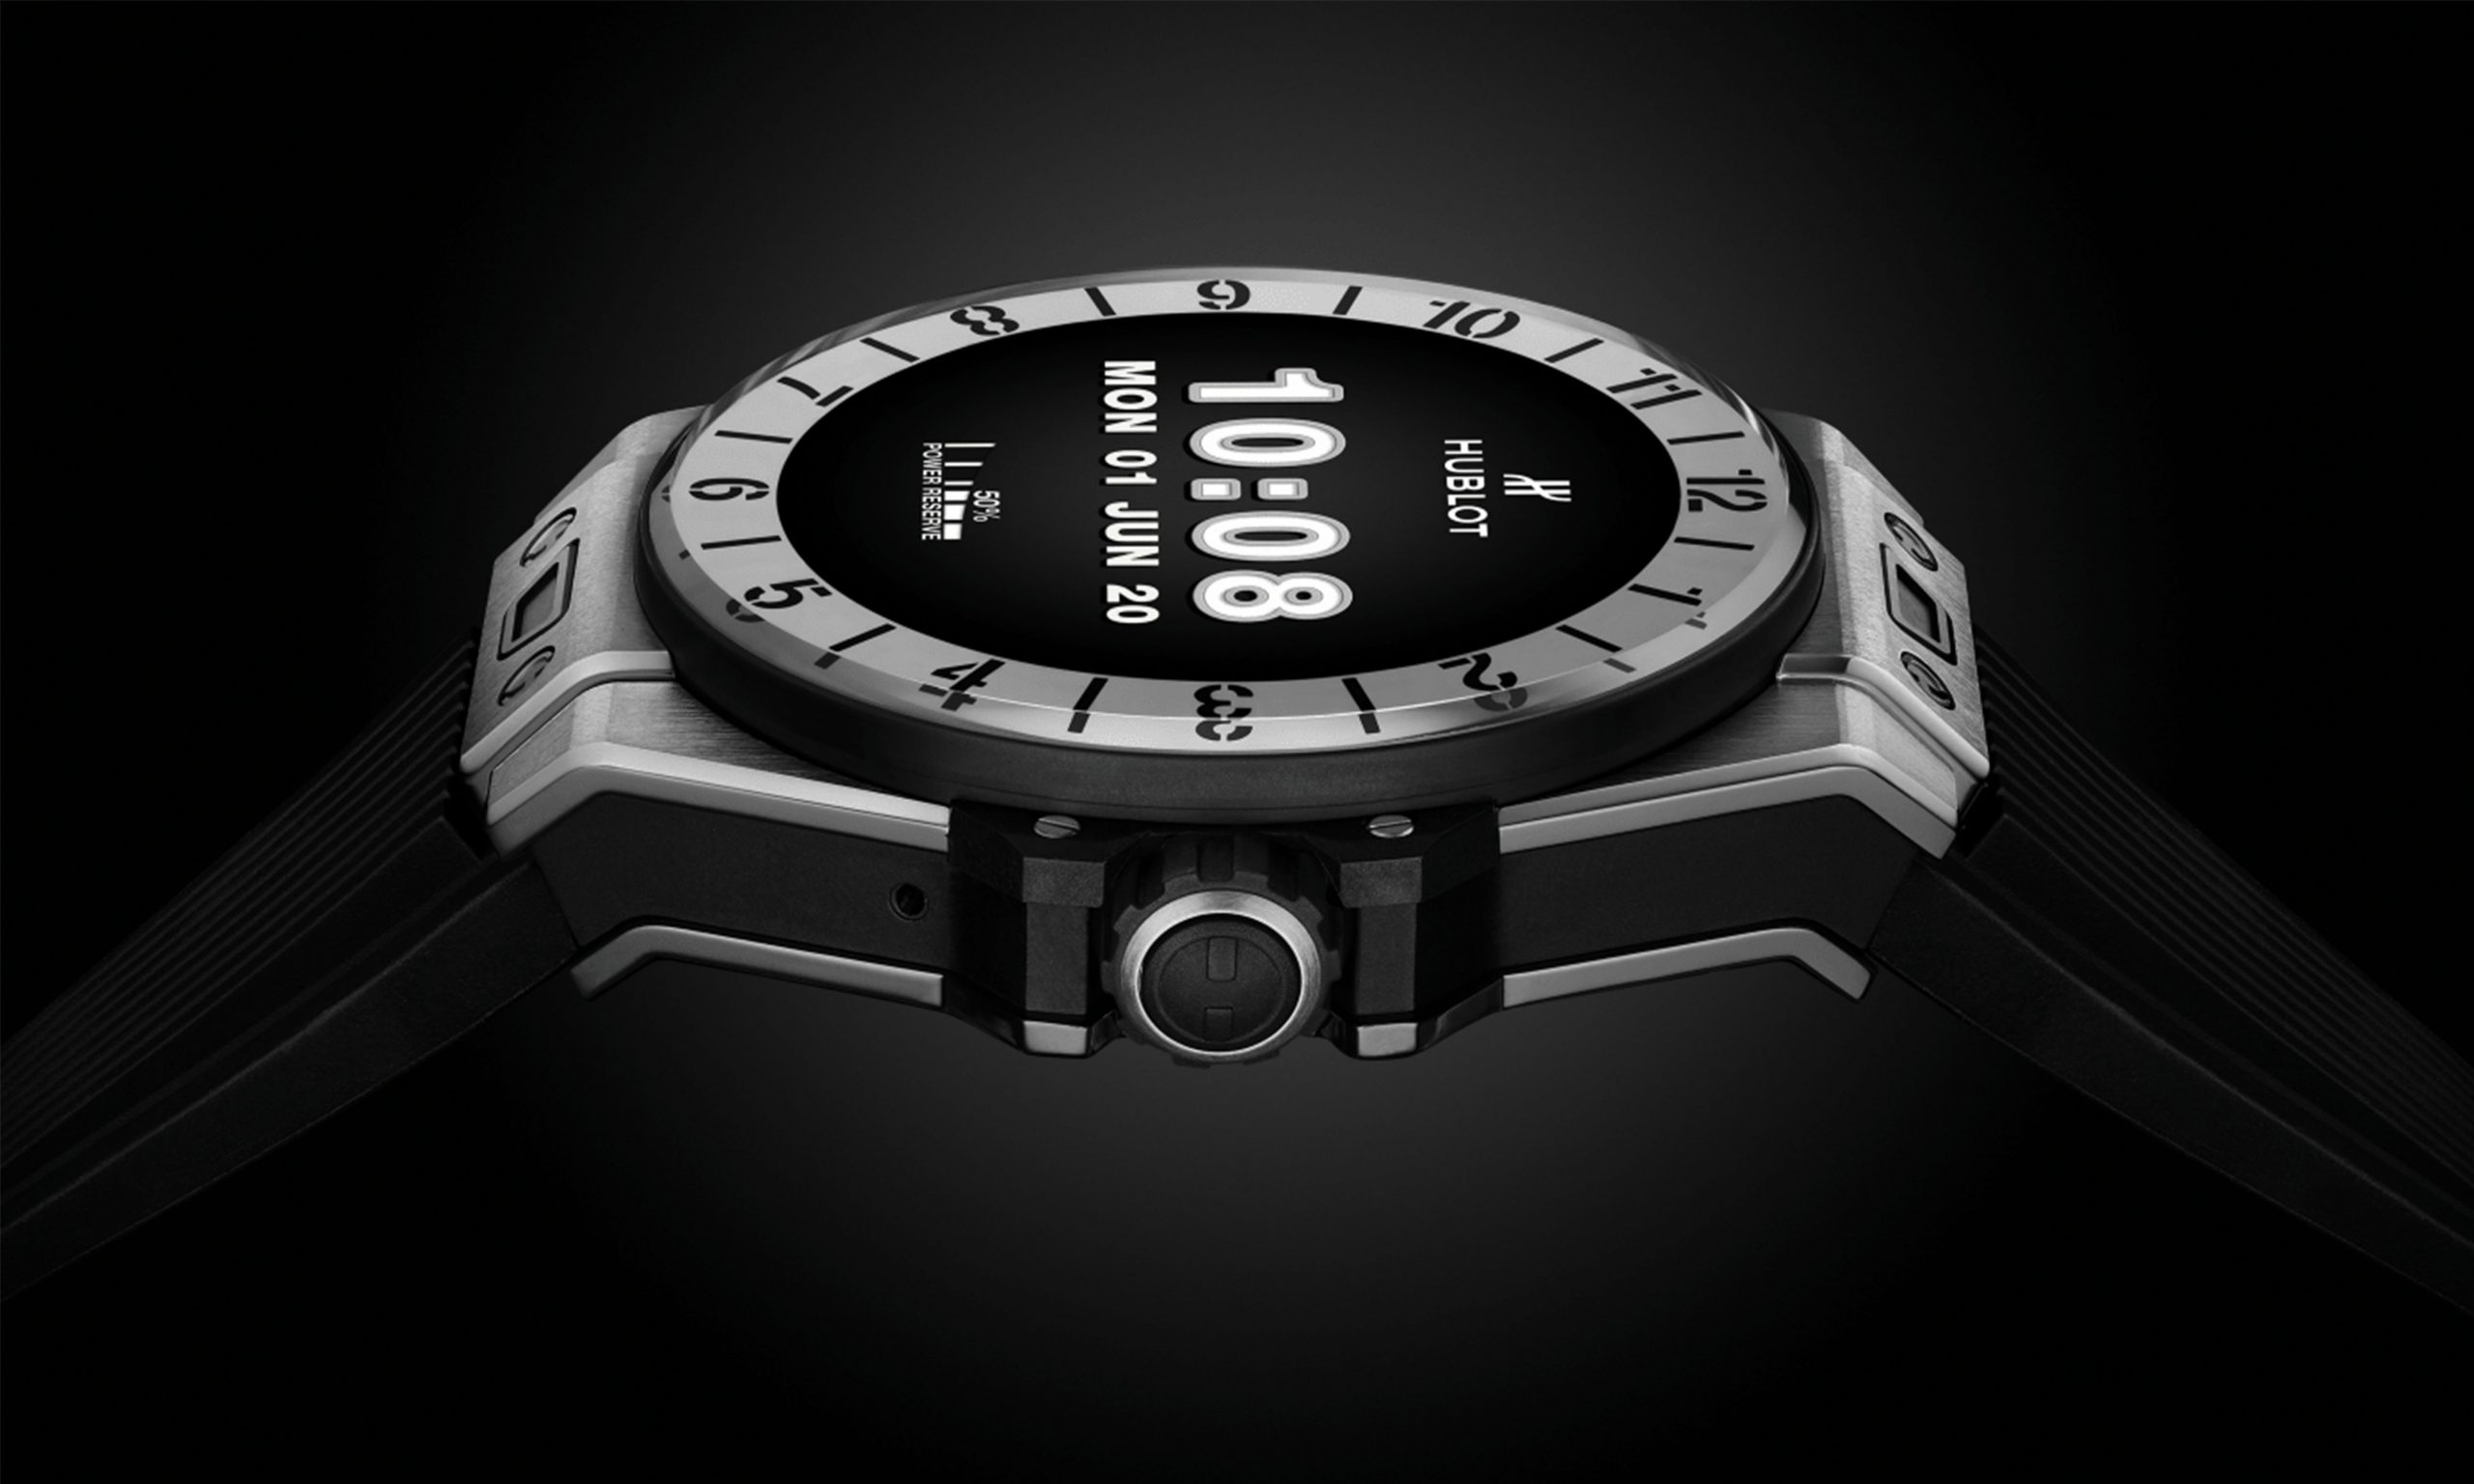 瑞士制造商宇舶推出豪华智能手表